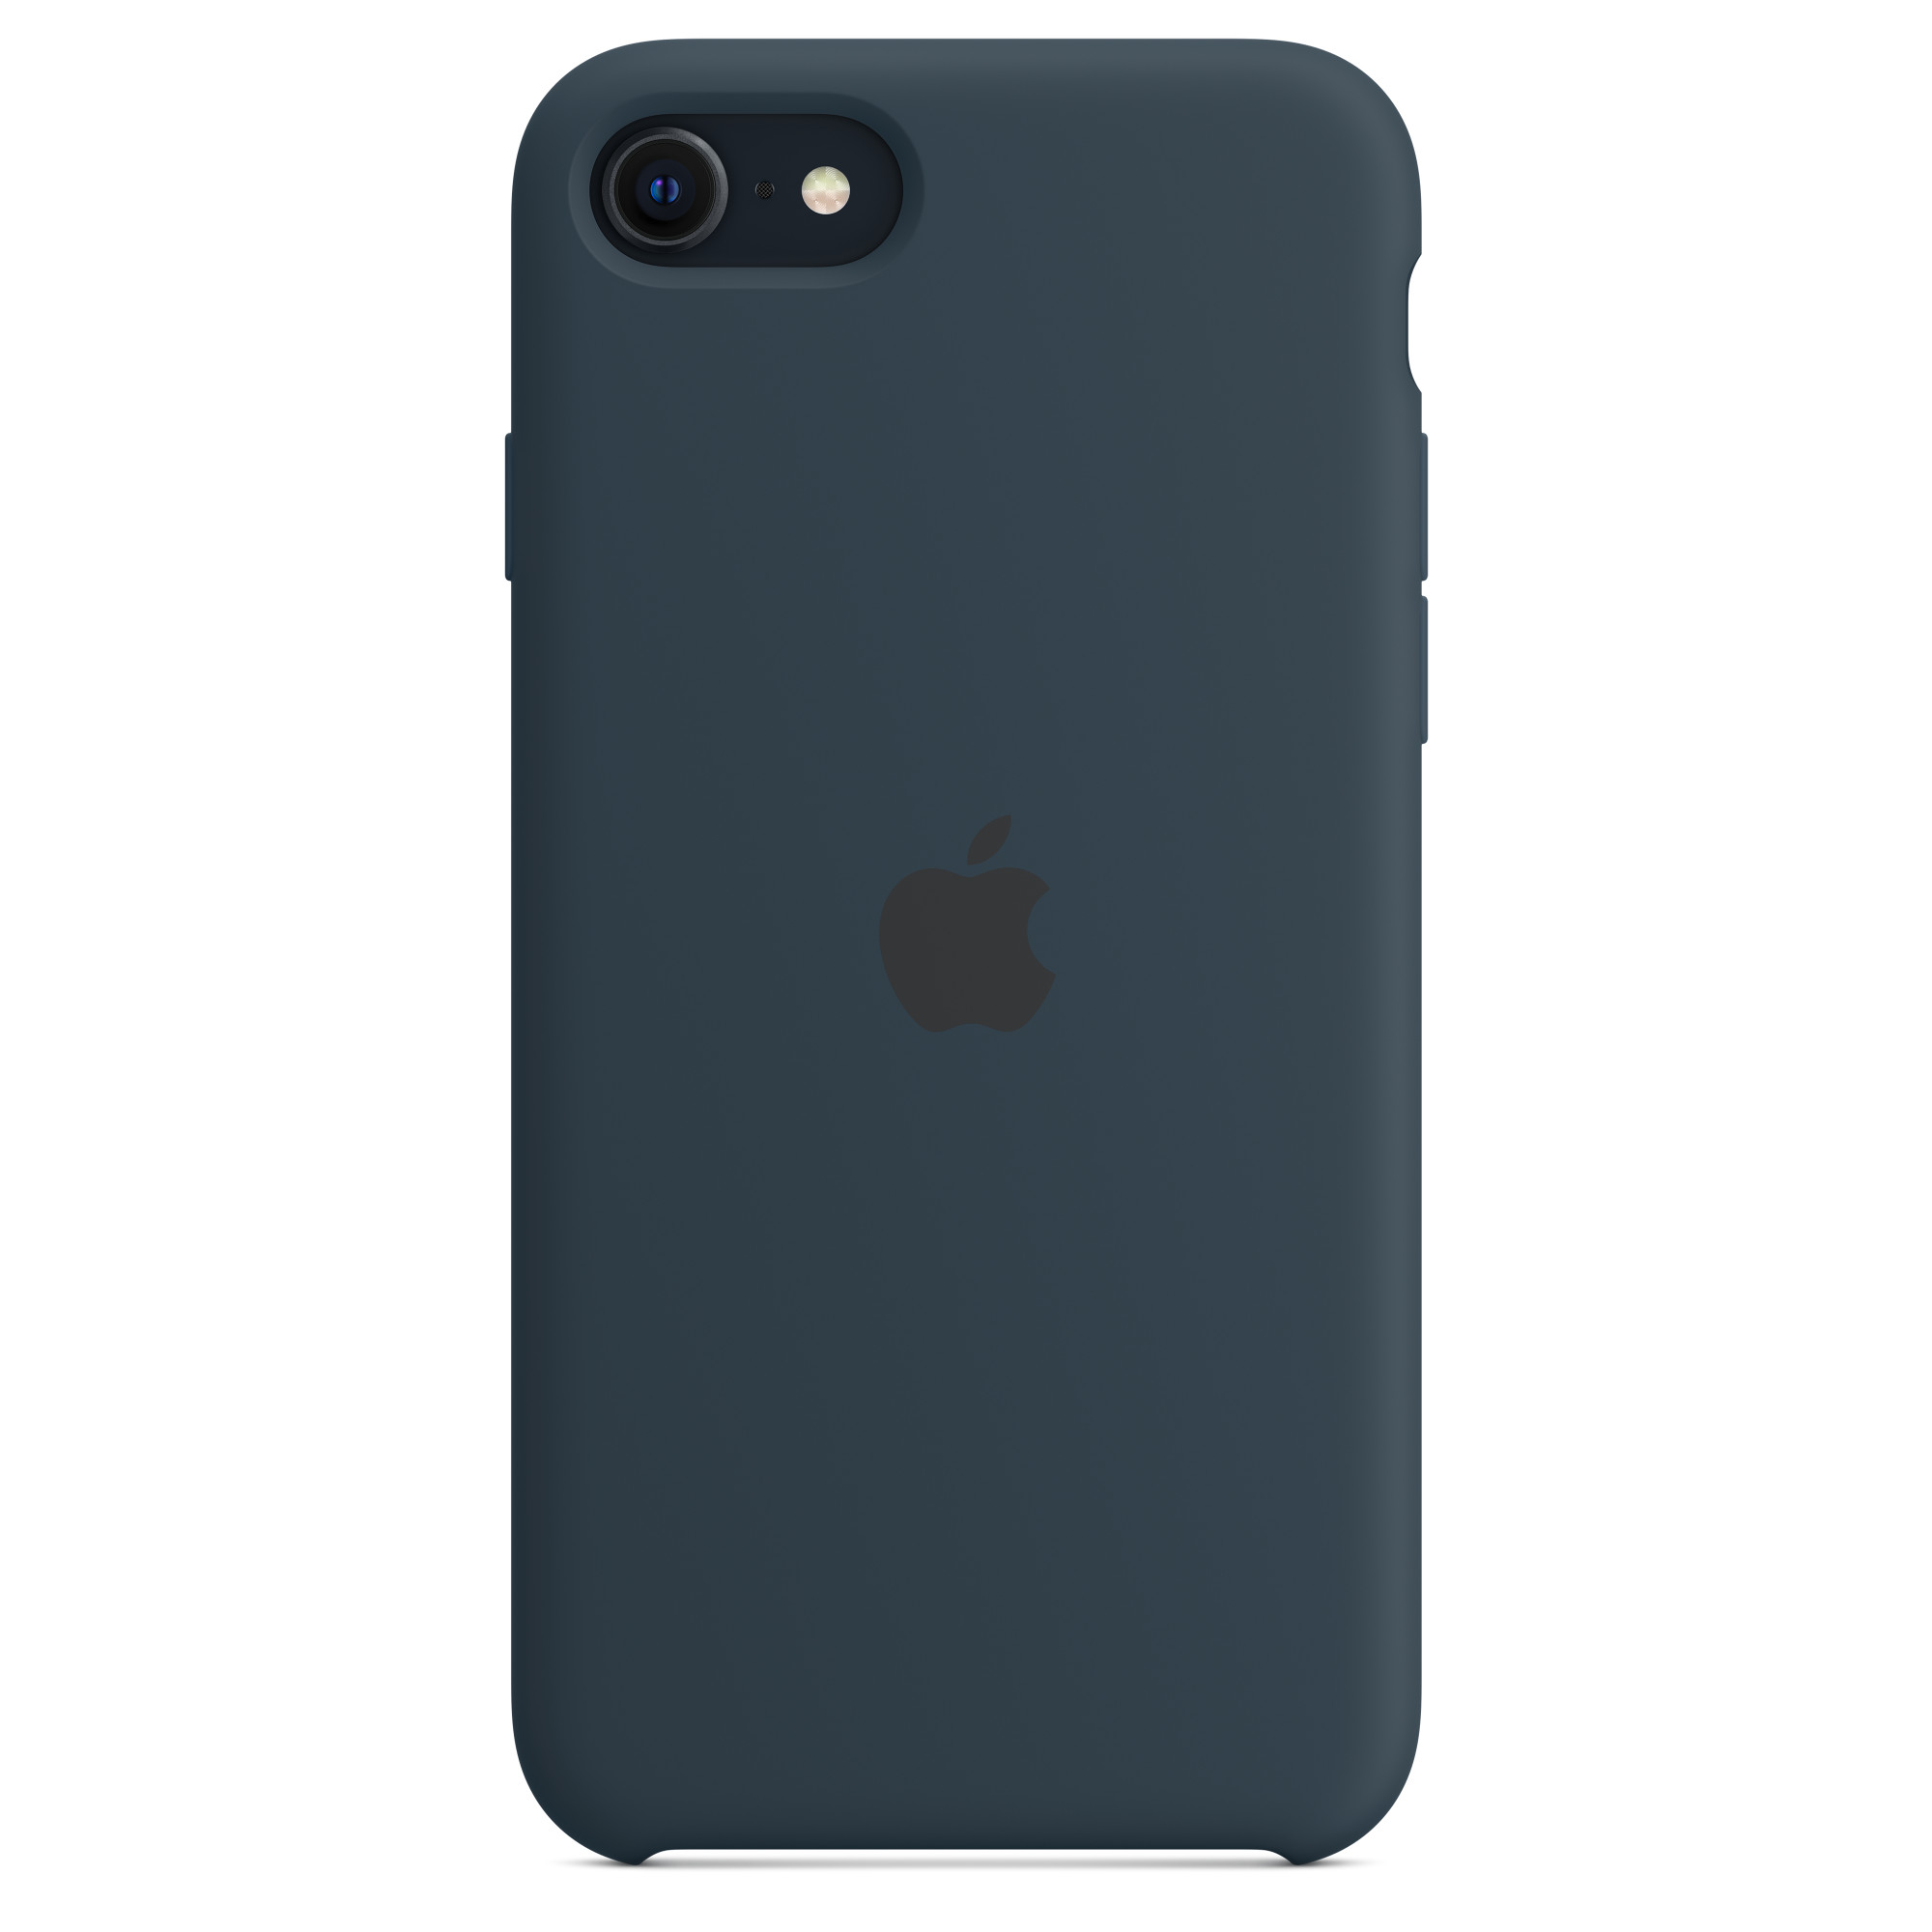 Funda de silicona para iPhone SE - Azul - Tienda Apple en Argentina